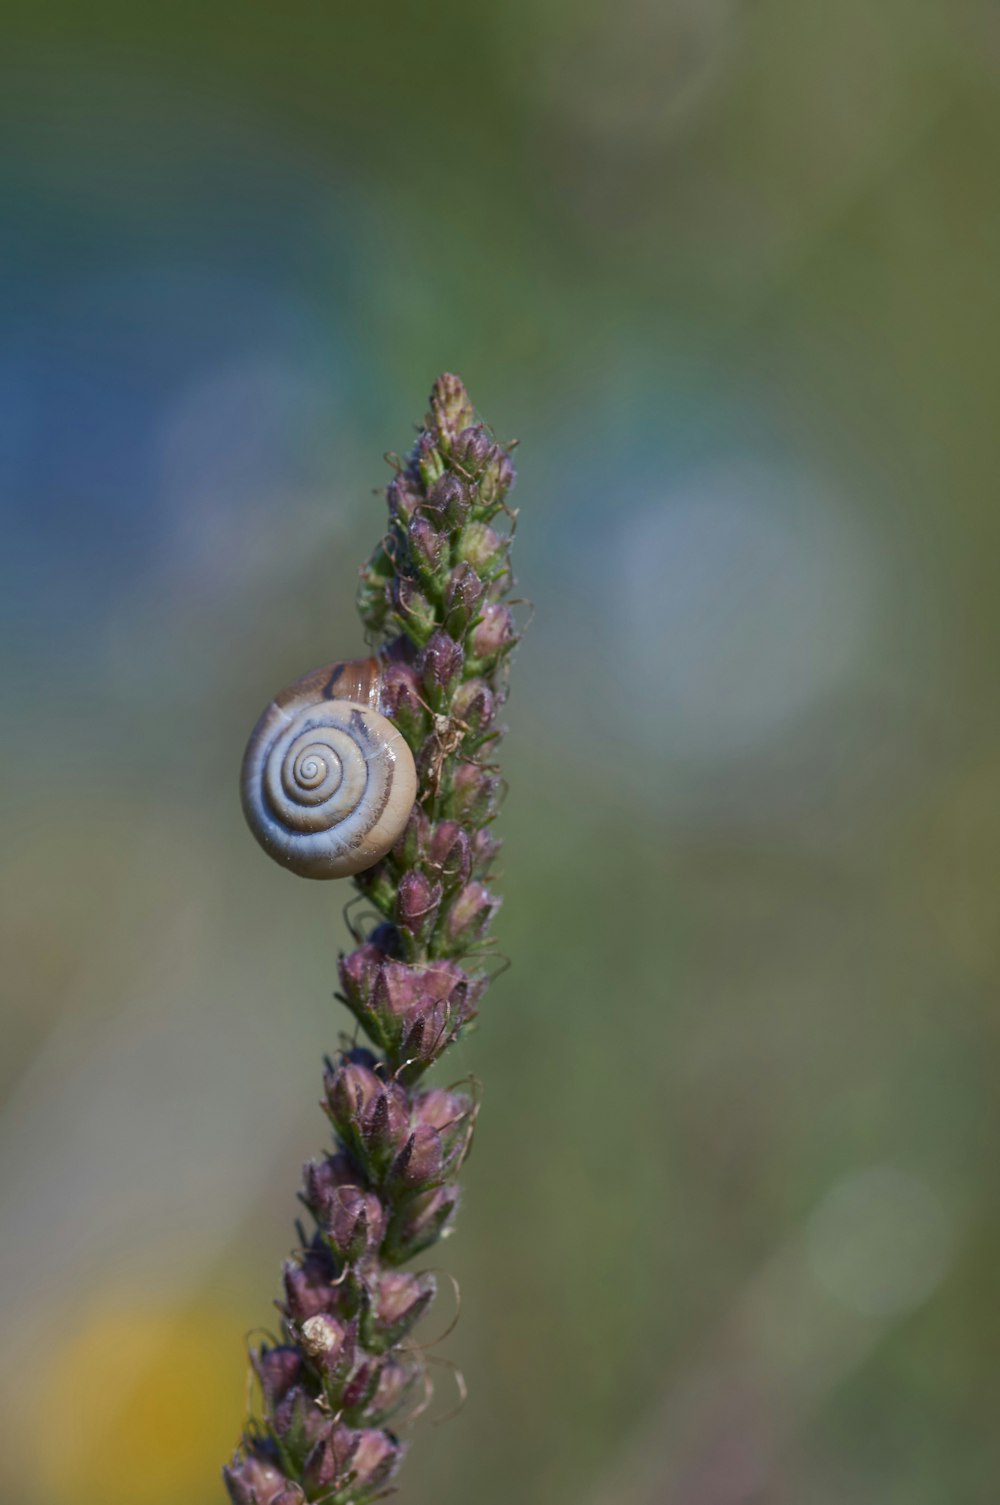 brown snail on purple flower